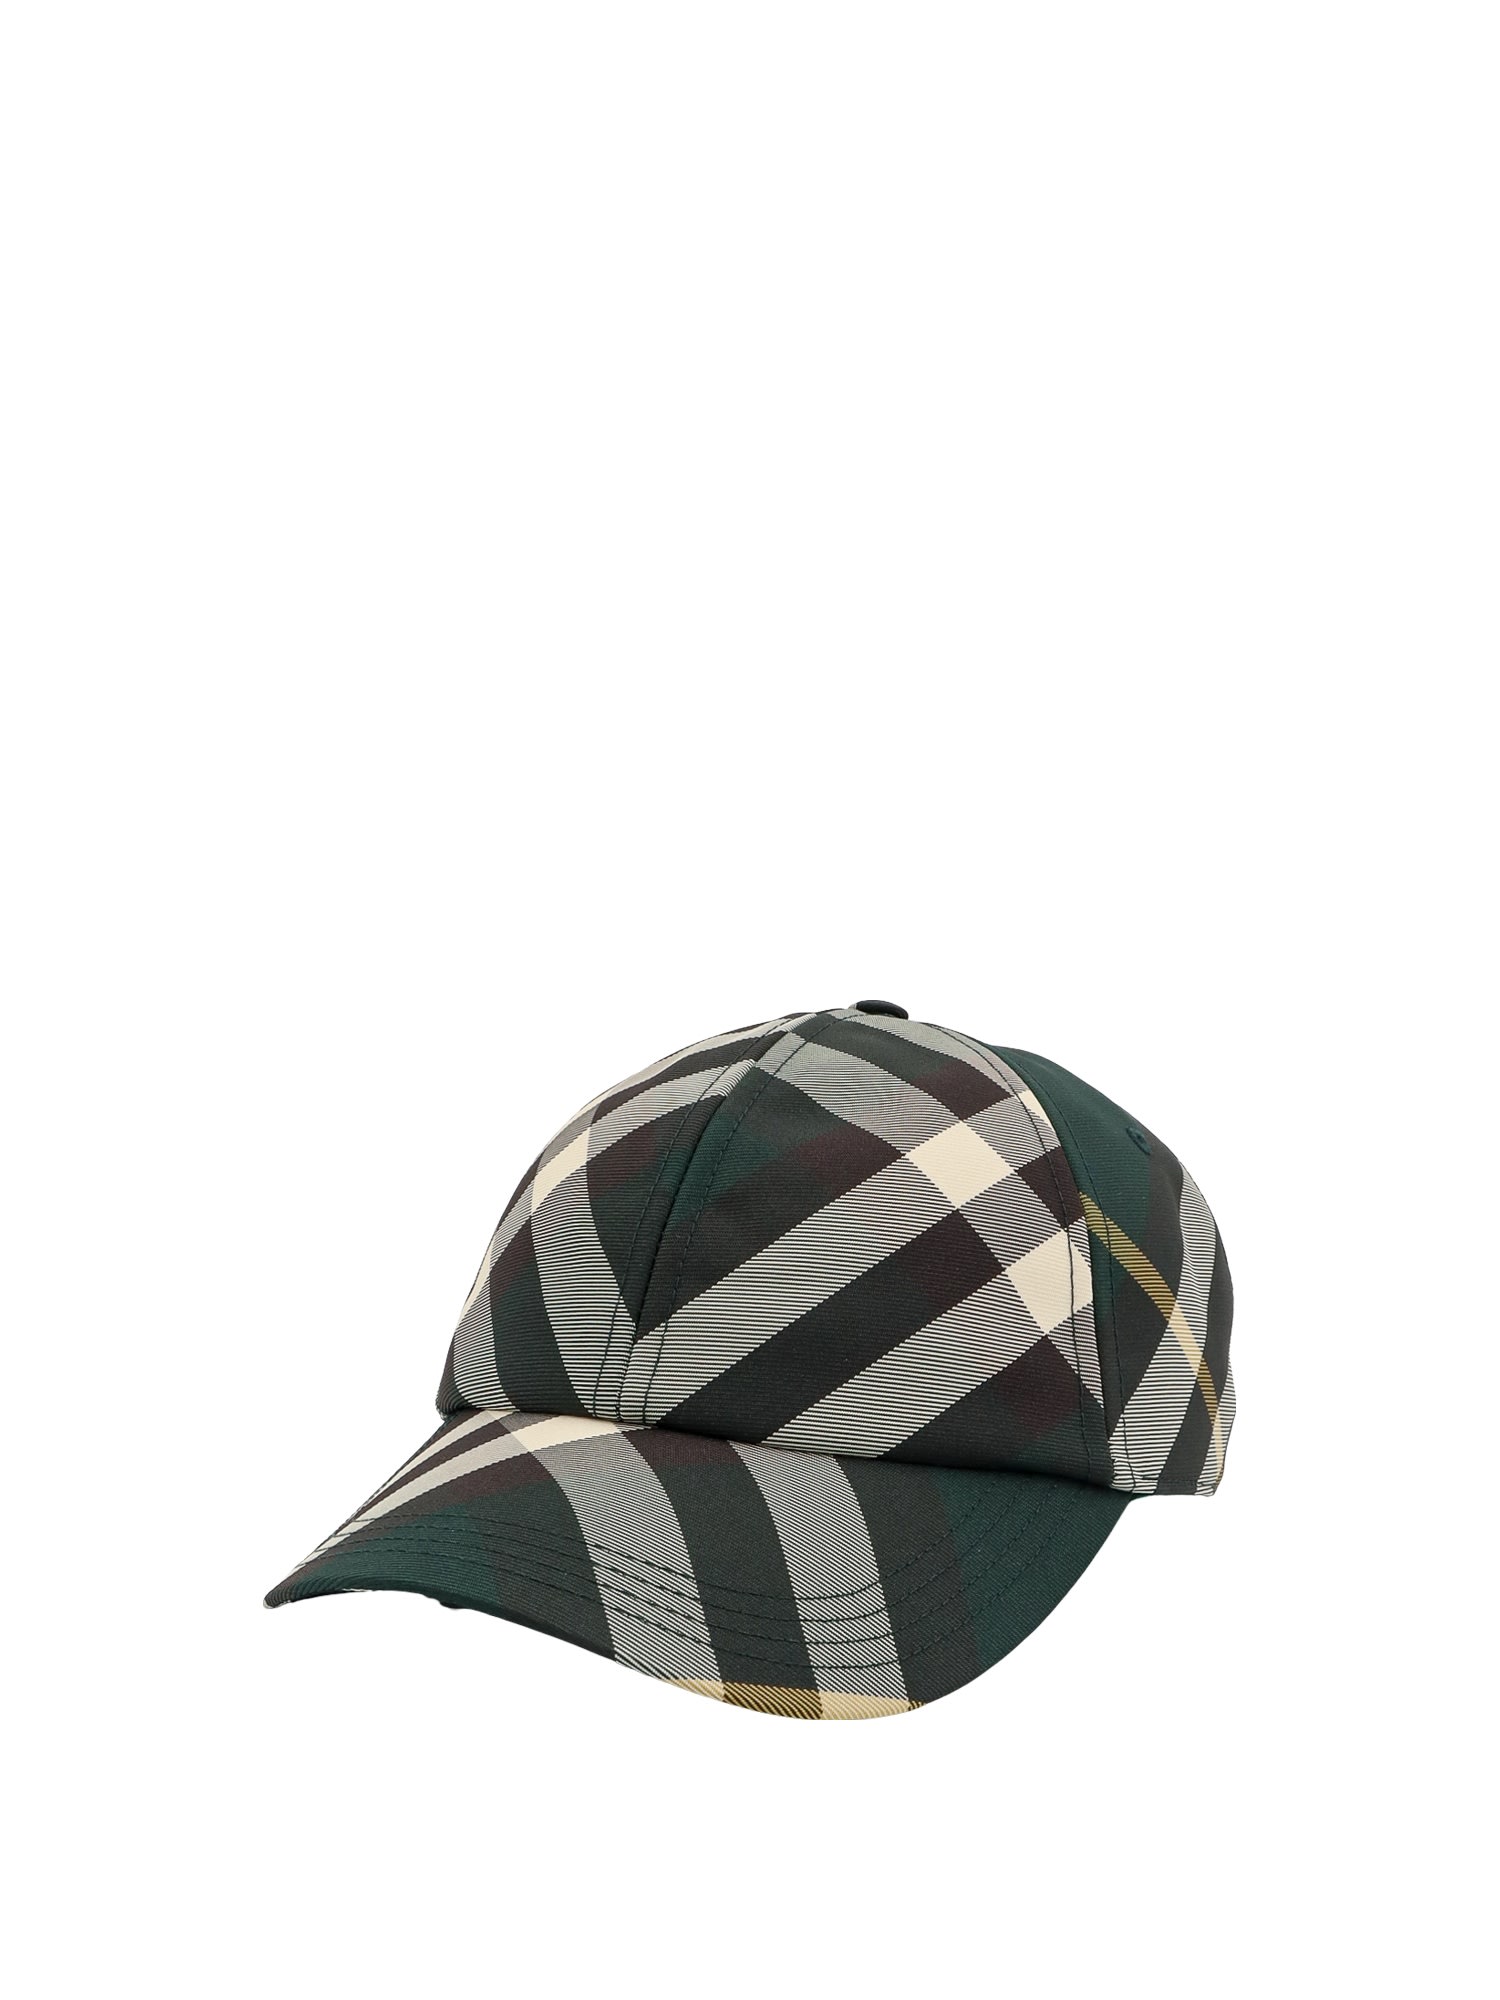 Shop Burberry Hat